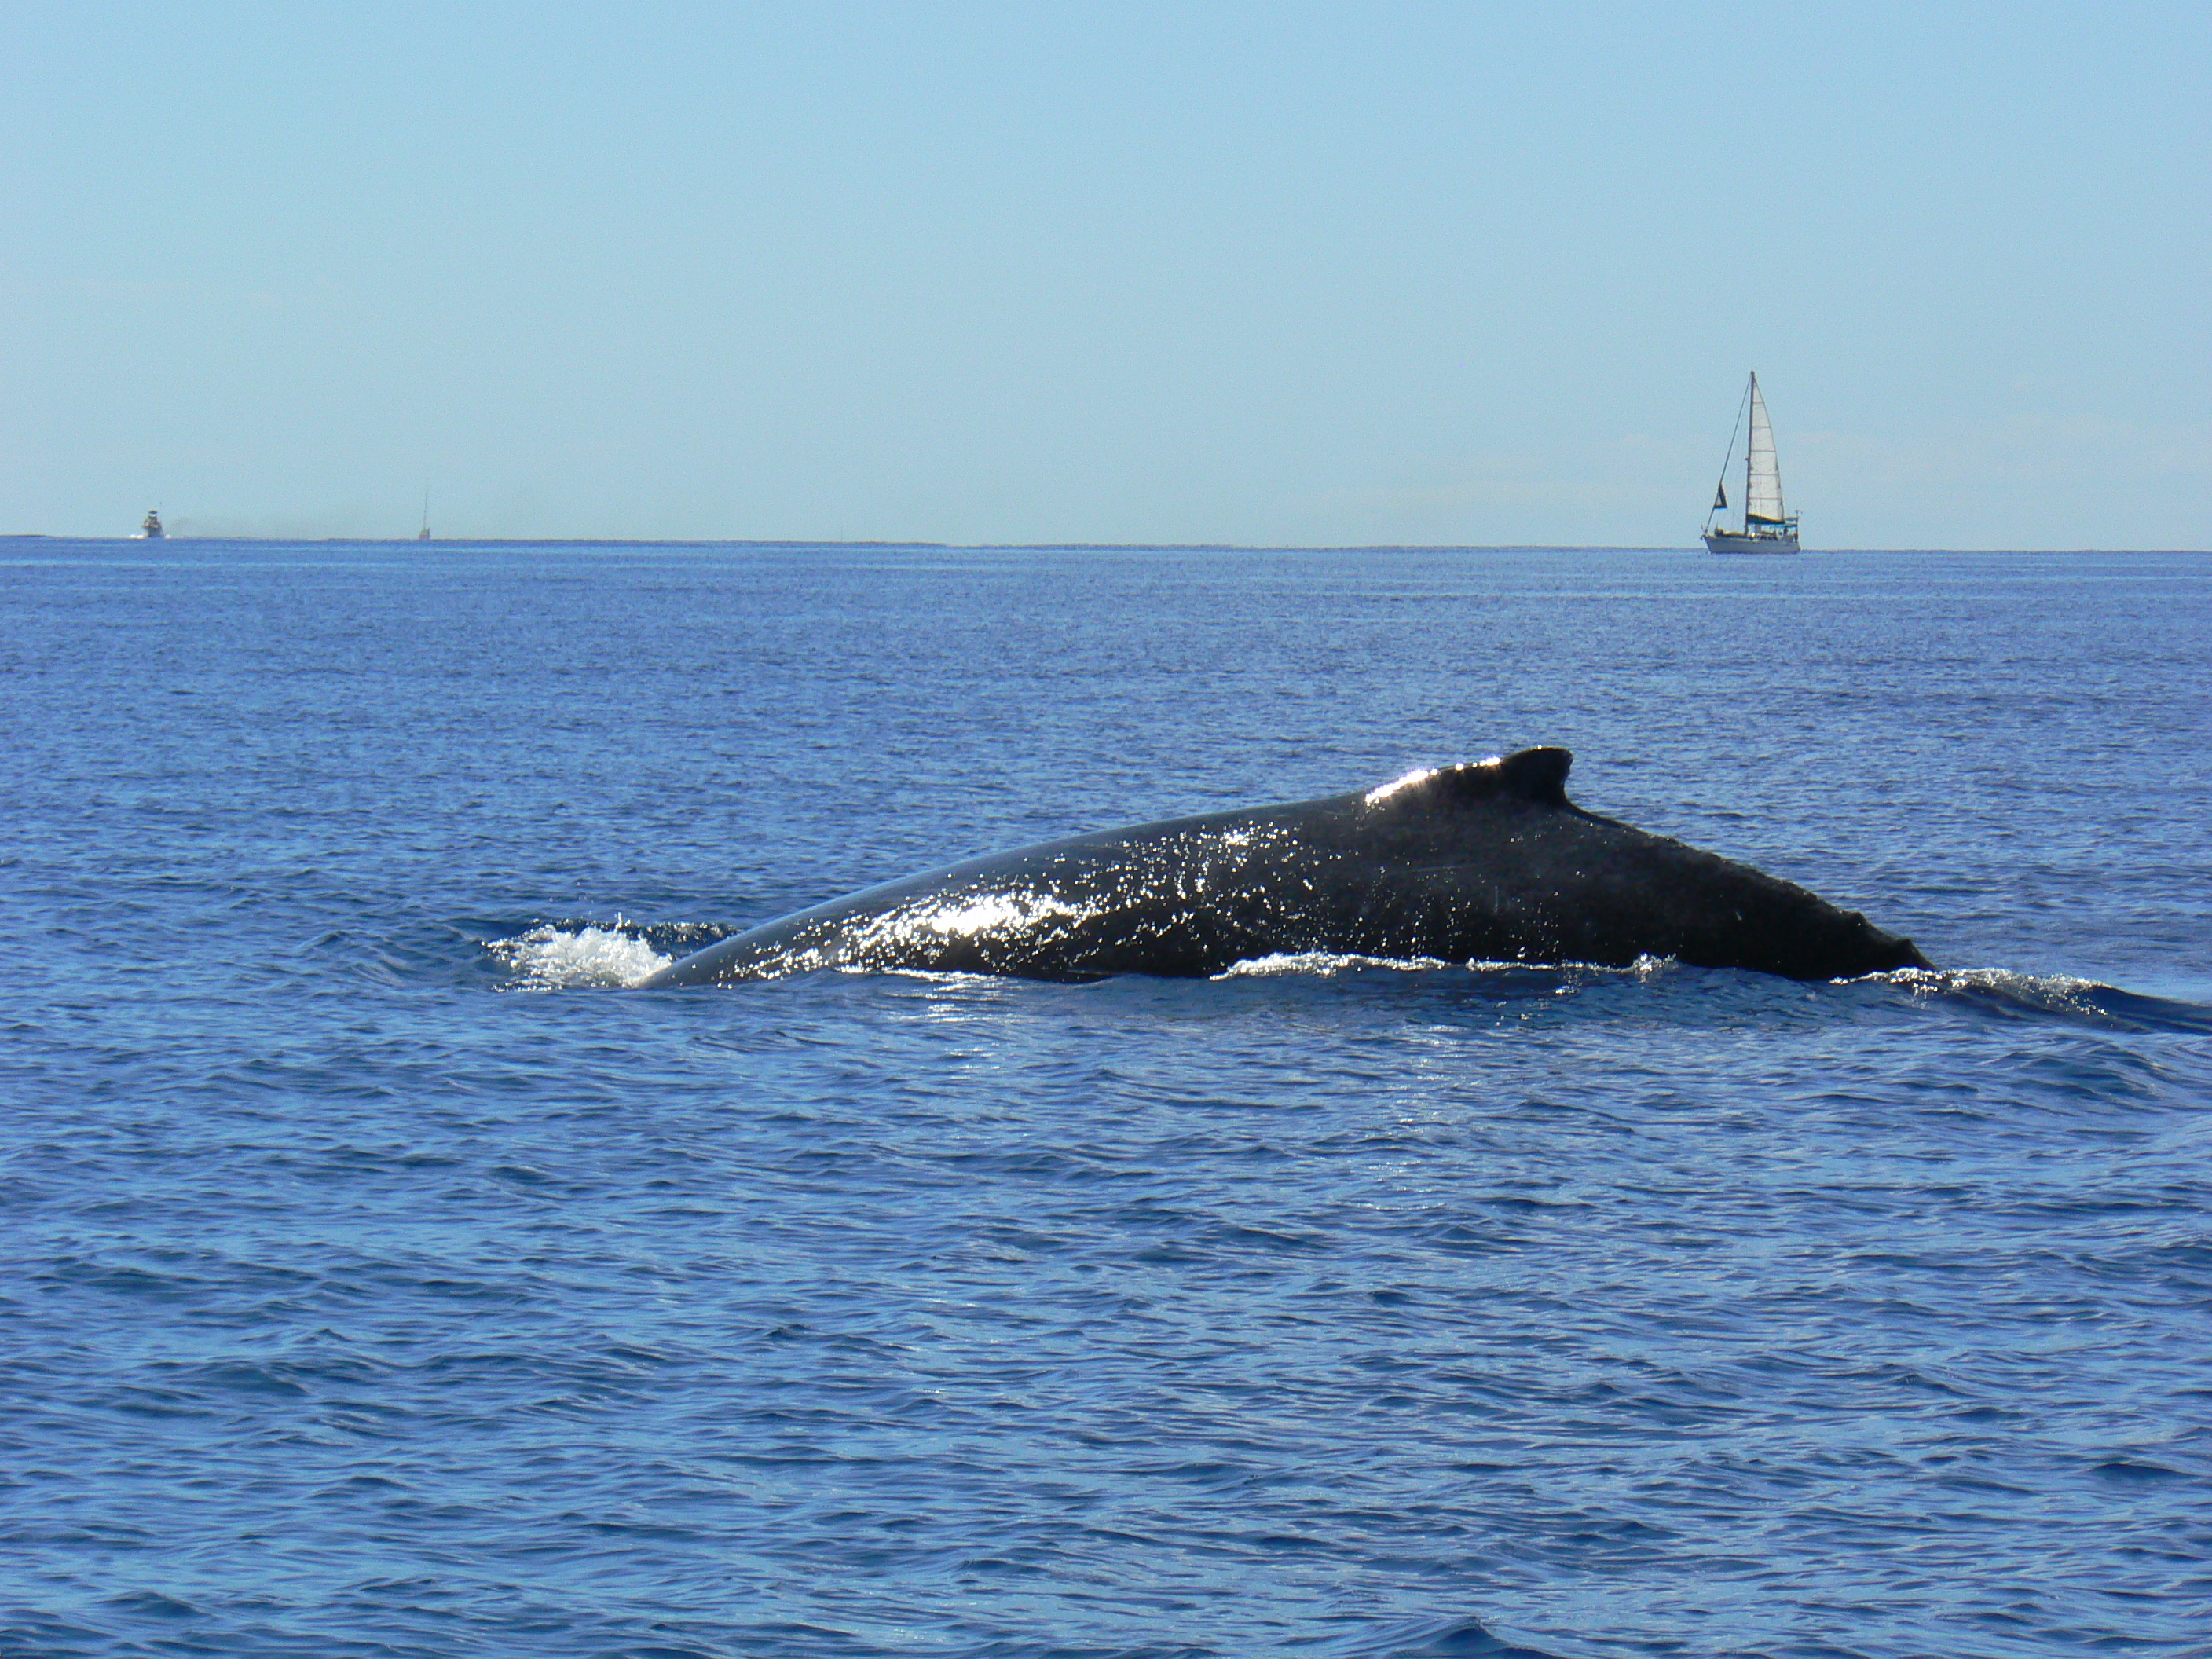 Le whale watching s’est considérablement développé depuis 20 ans.